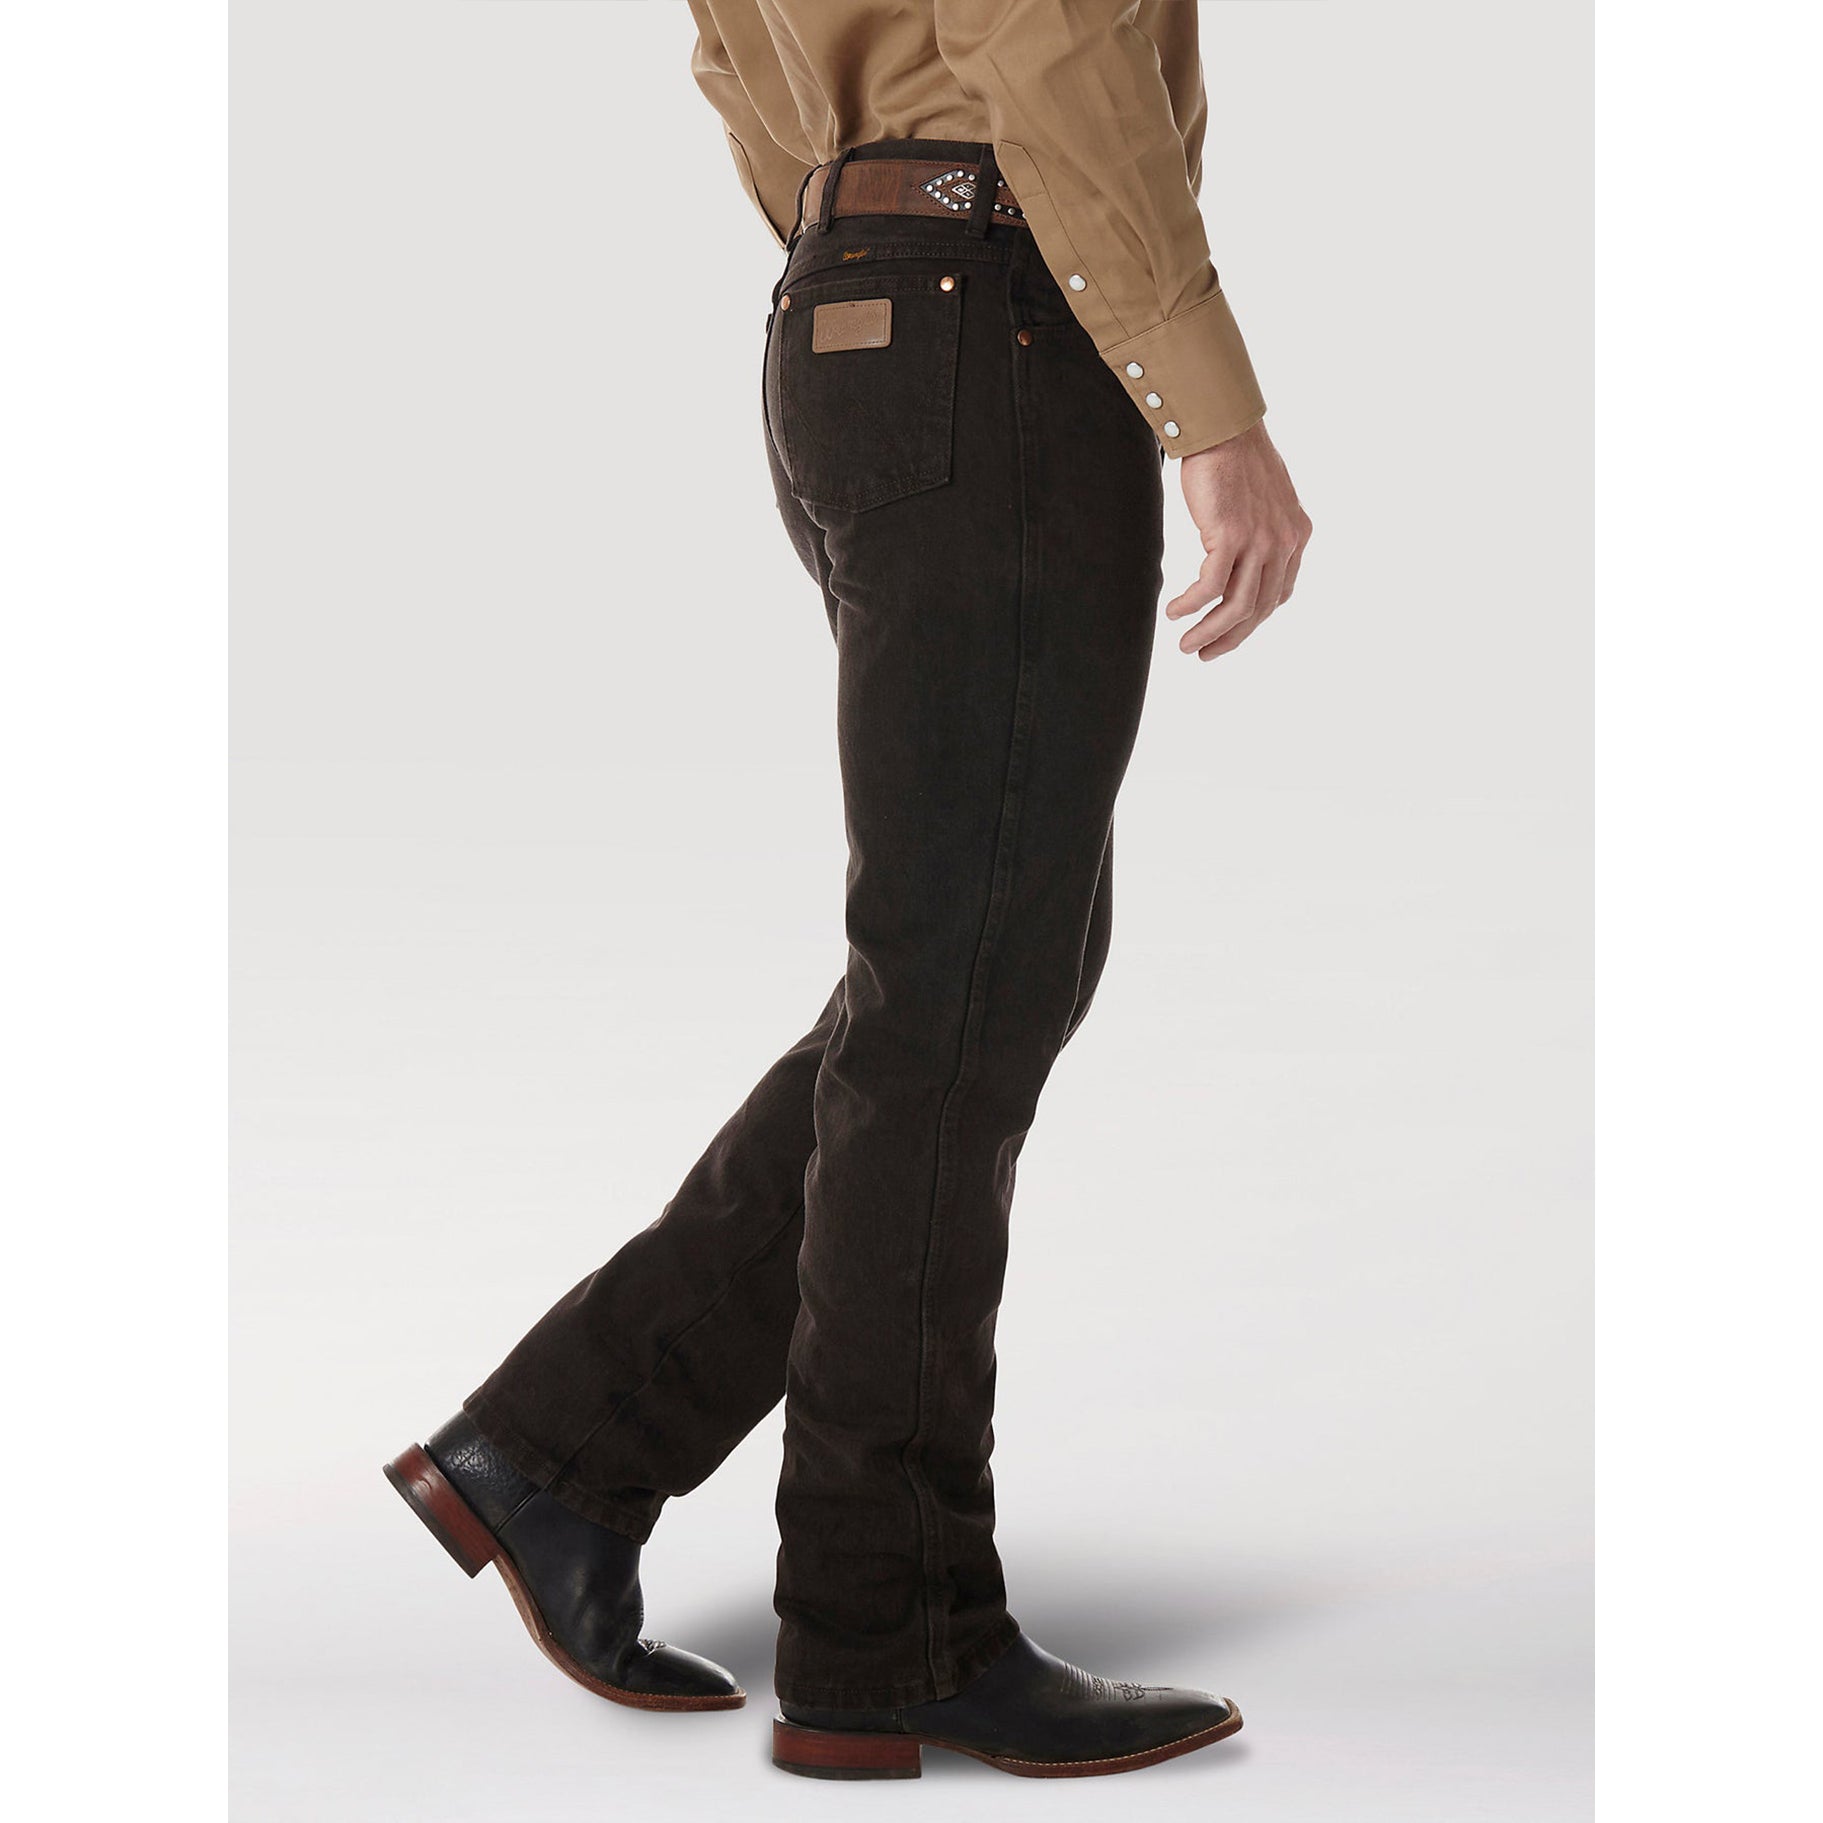 Black Wrangler Cowboy Cut Slim Fit Jeans | Vaquero Boots